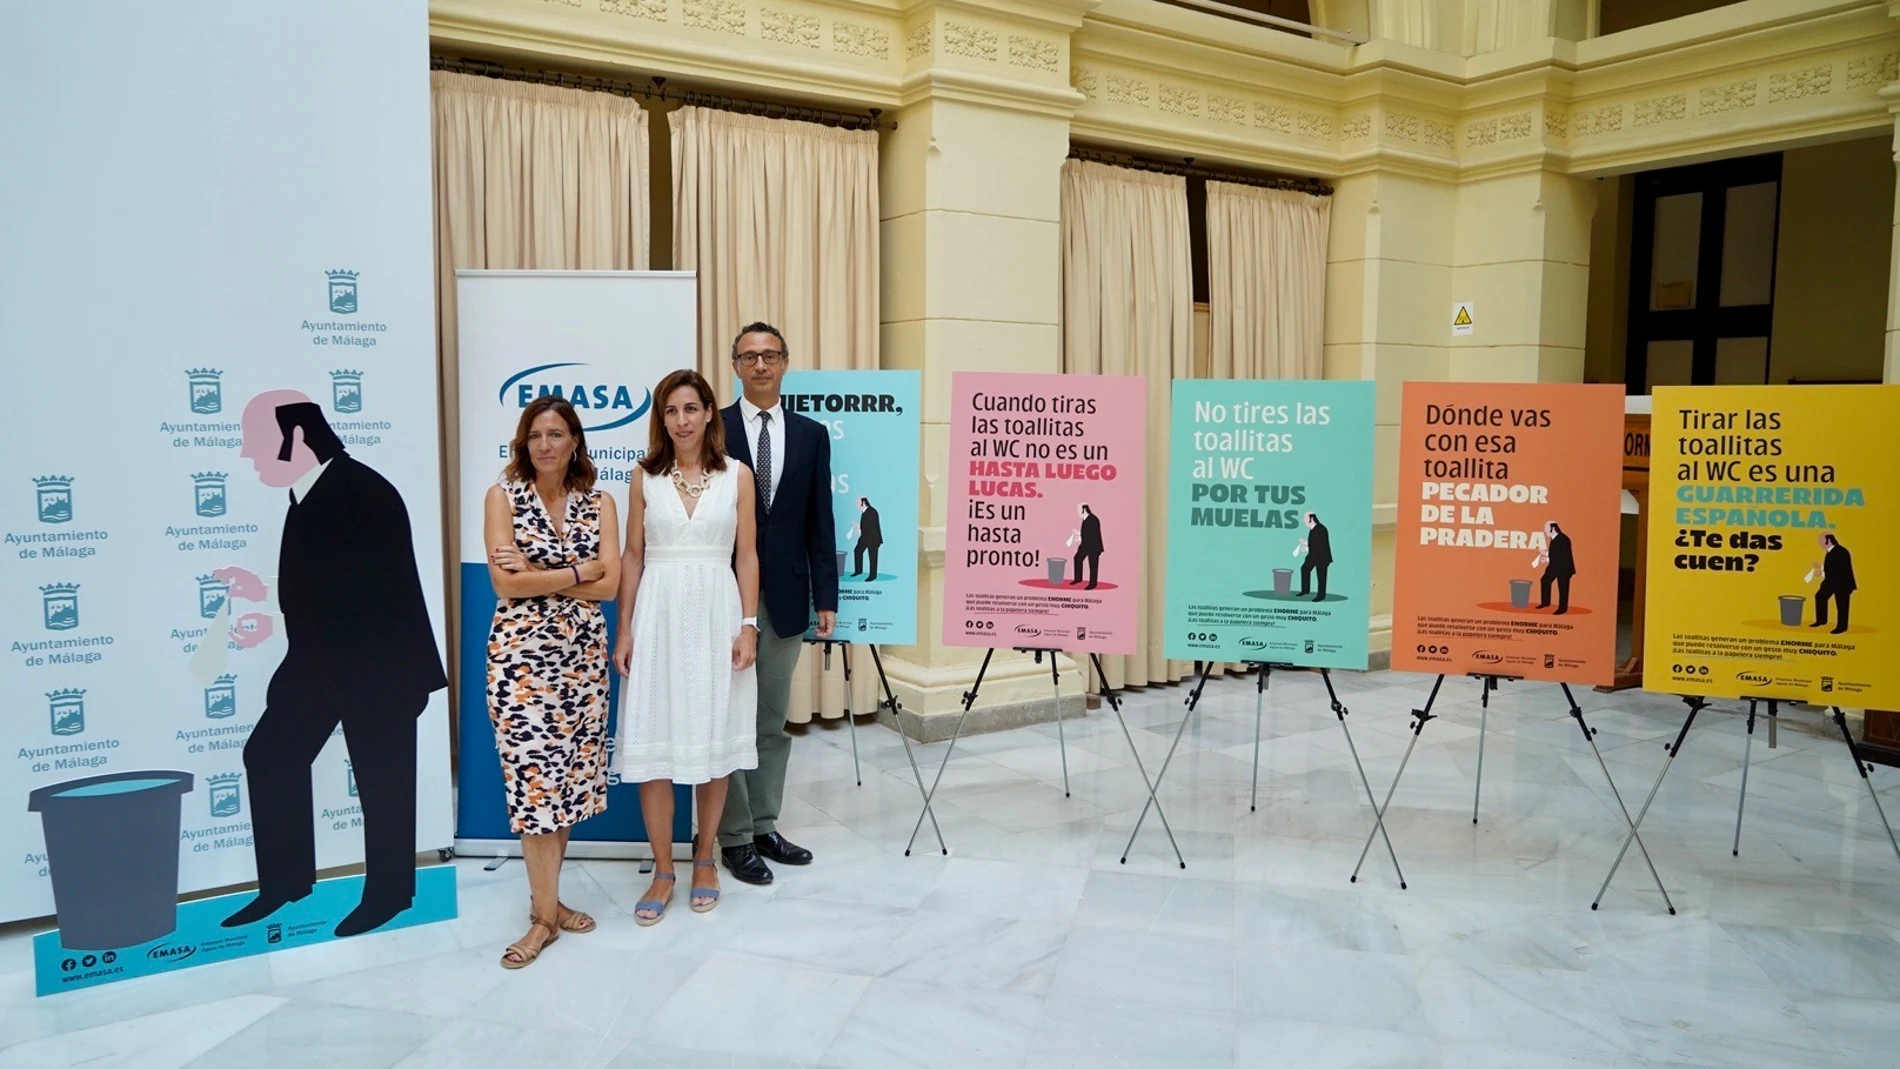 Presentación de la campaña del Ayuntamiento de Málaga para evitar que se tiren toallitas al inodoro inspirada en Chiquito